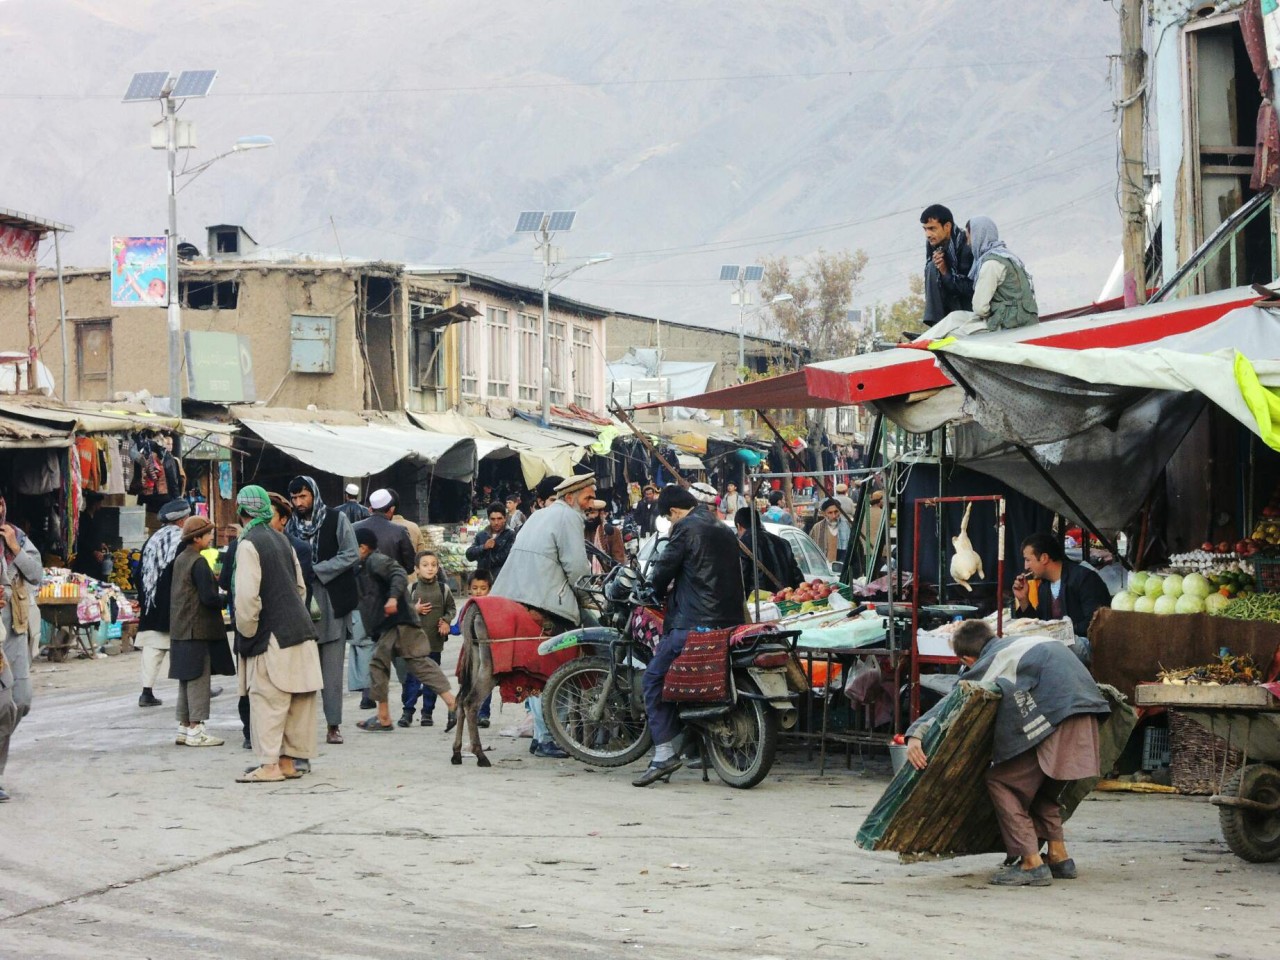 Street life in Afghanistan